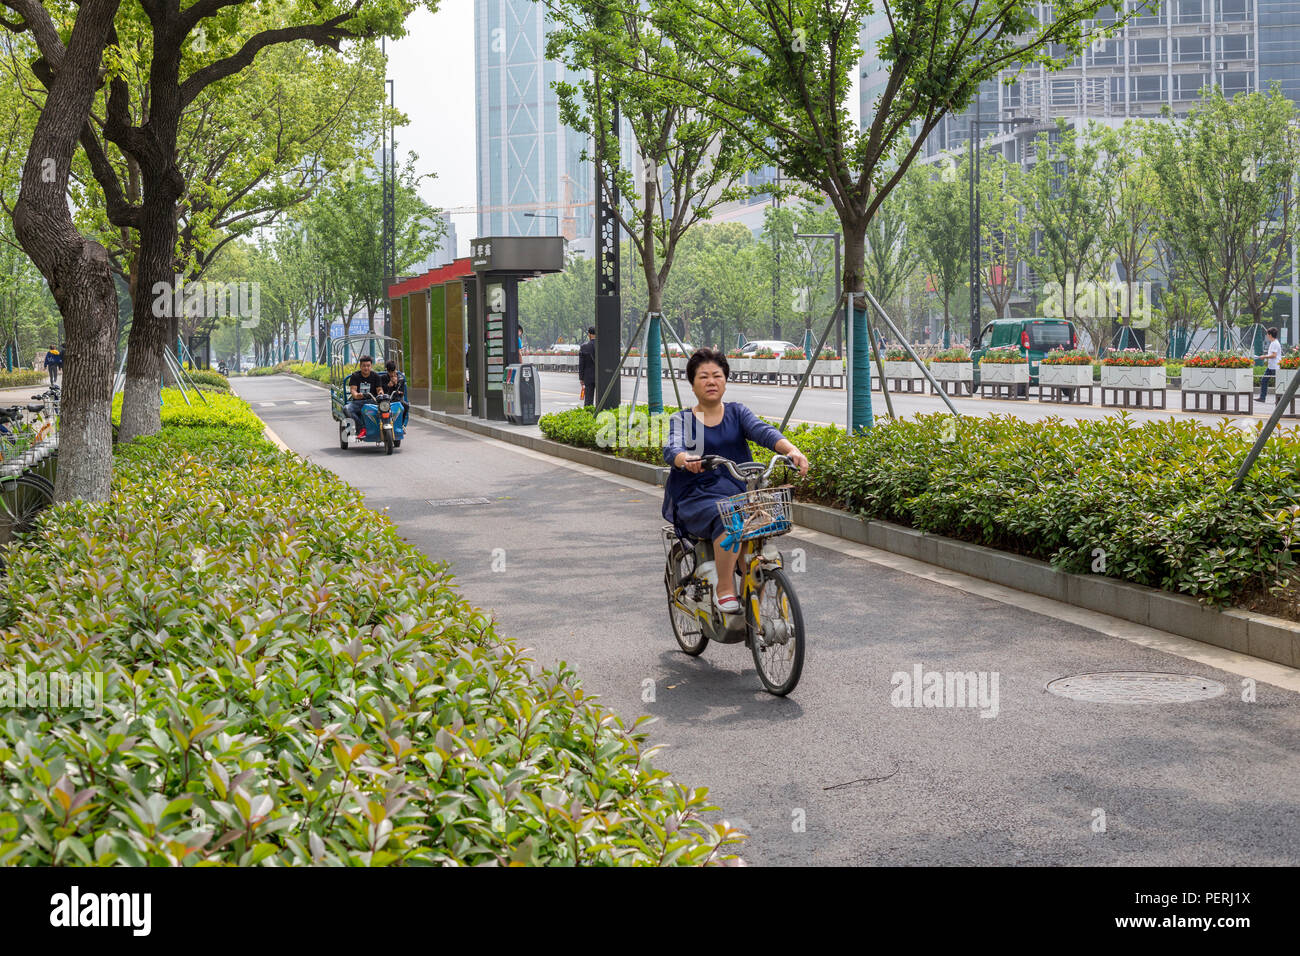 Suzhou, Jiangsu, Chine. De nombreuses villes ont les voies dédiées à l'usage des motos, vélos, et autres petits véhicules. Banque D'Images